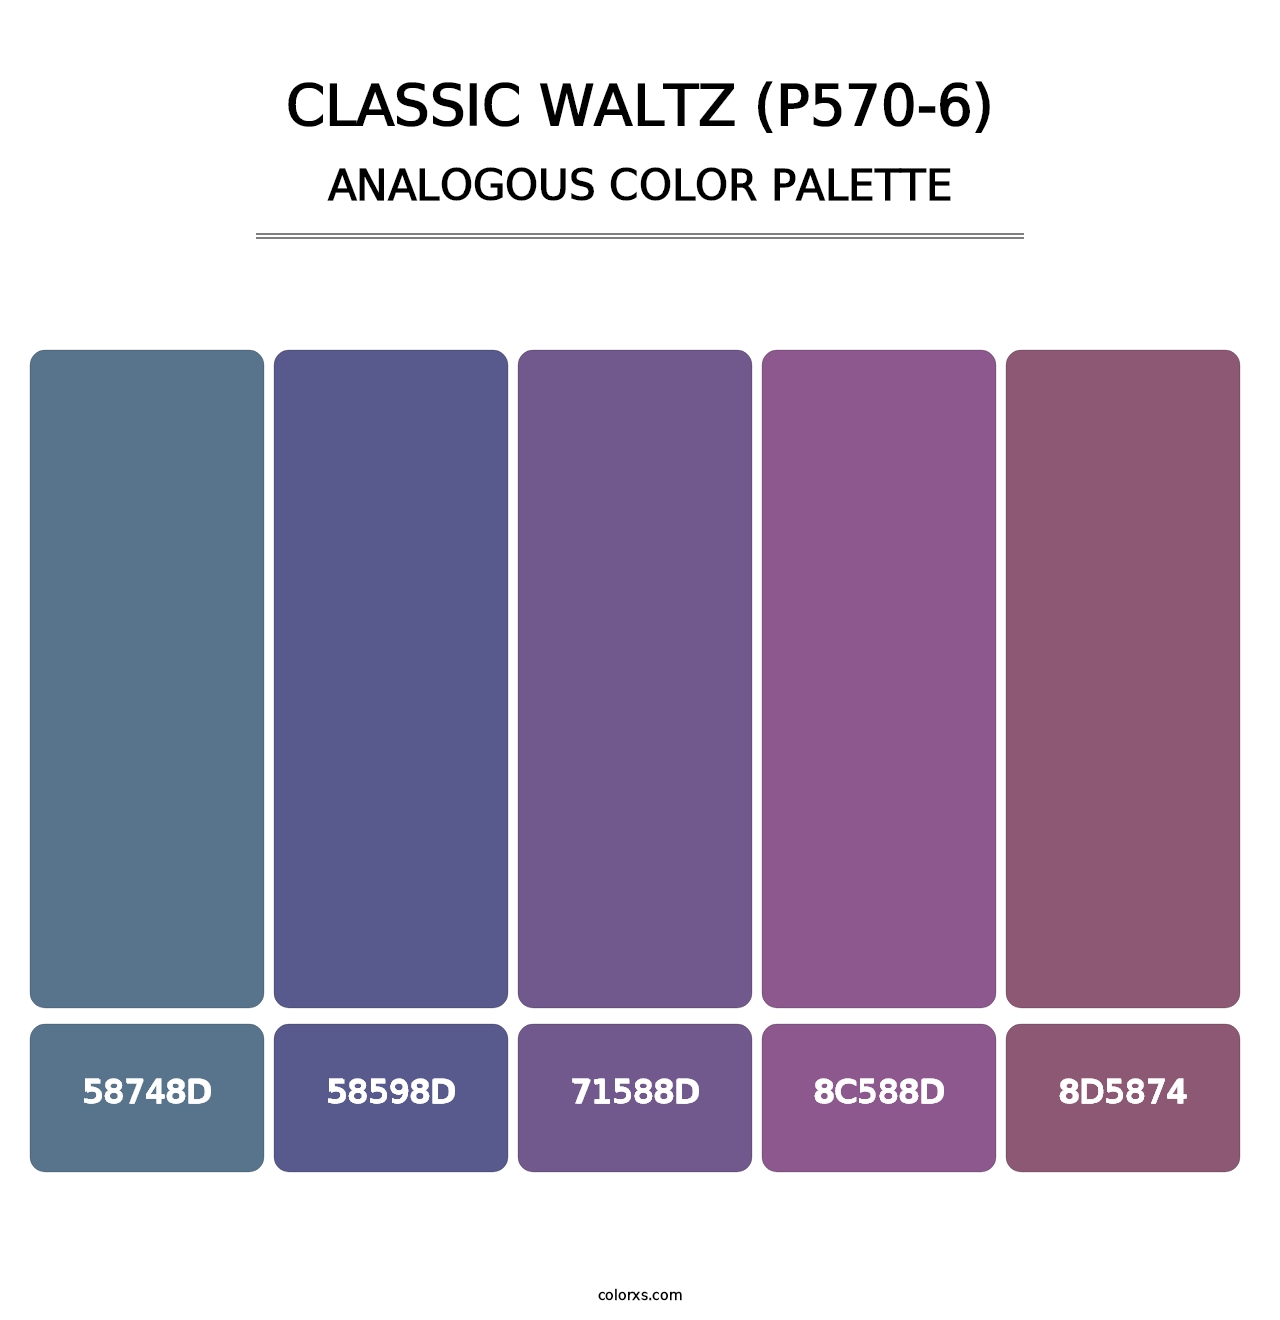 Classic Waltz (P570-6) - Analogous Color Palette